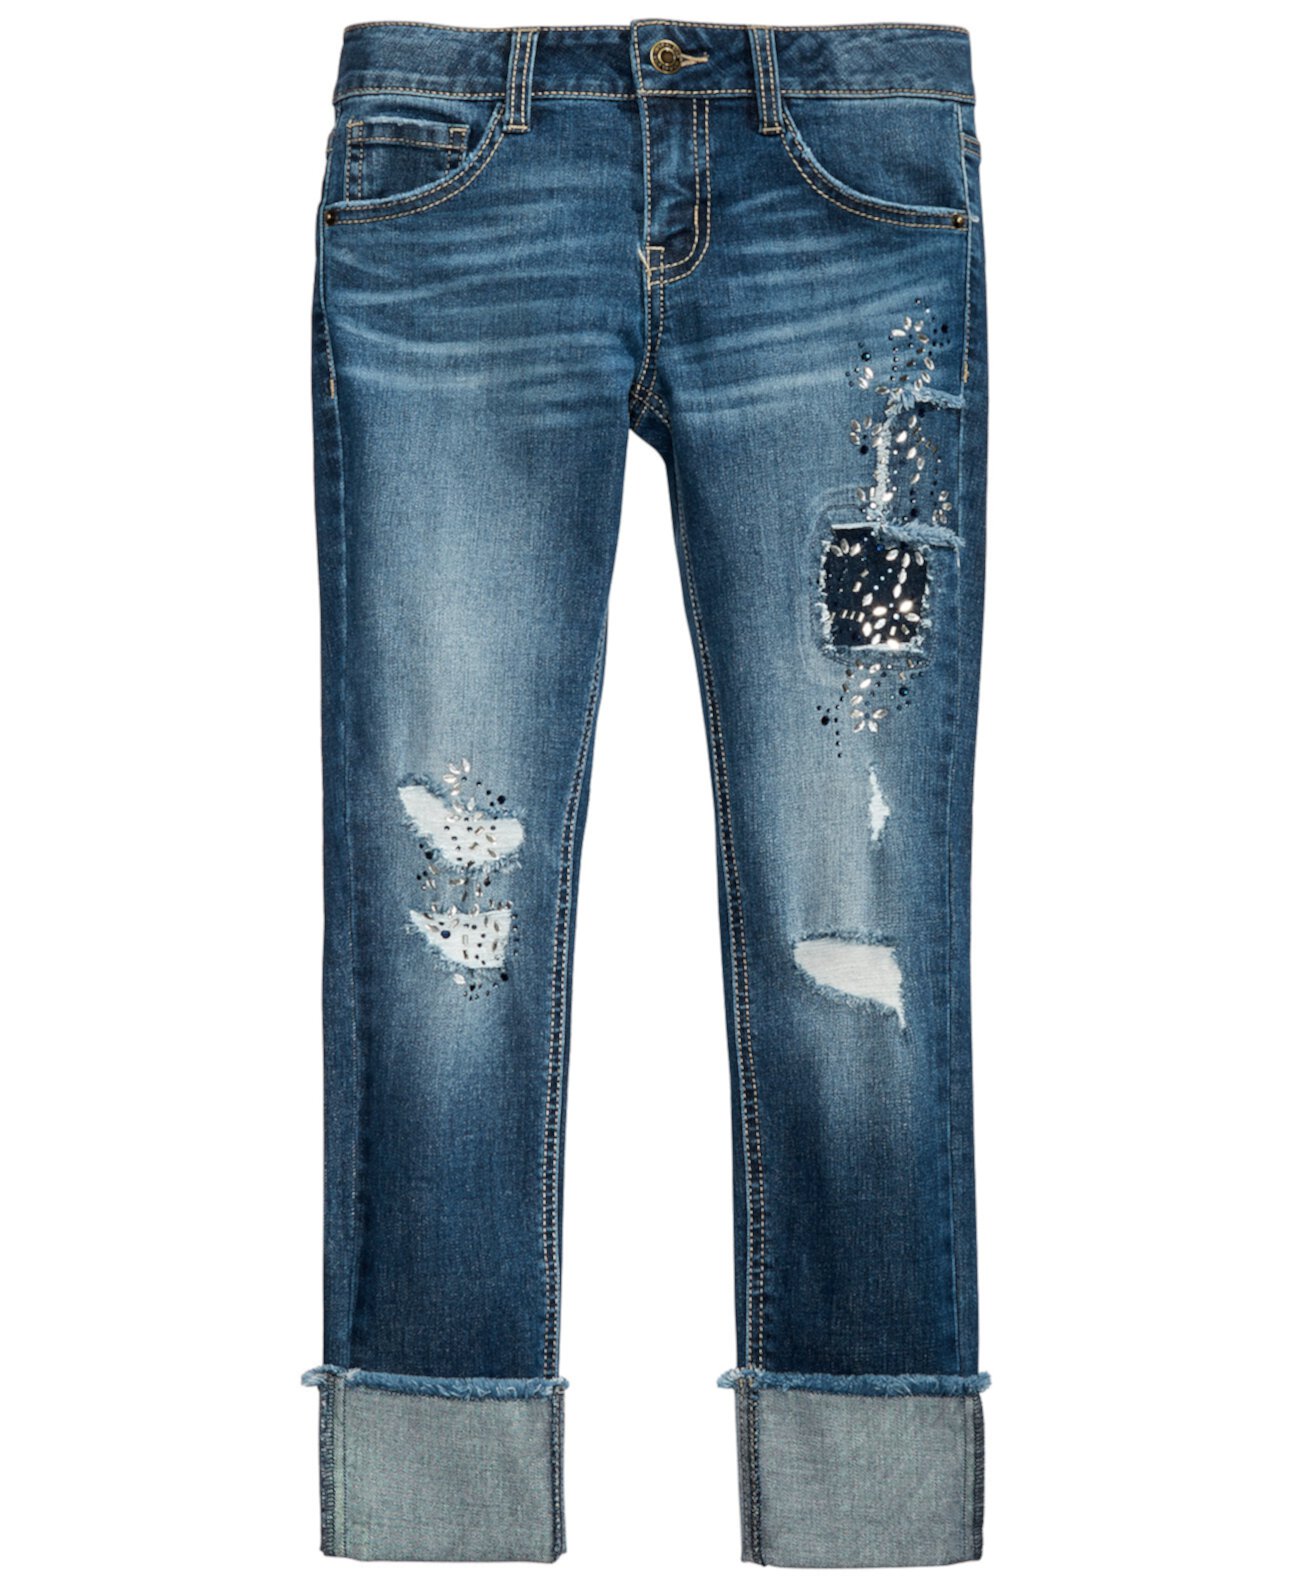 Рваные джинсы для девочек с заплатками Imperial Star